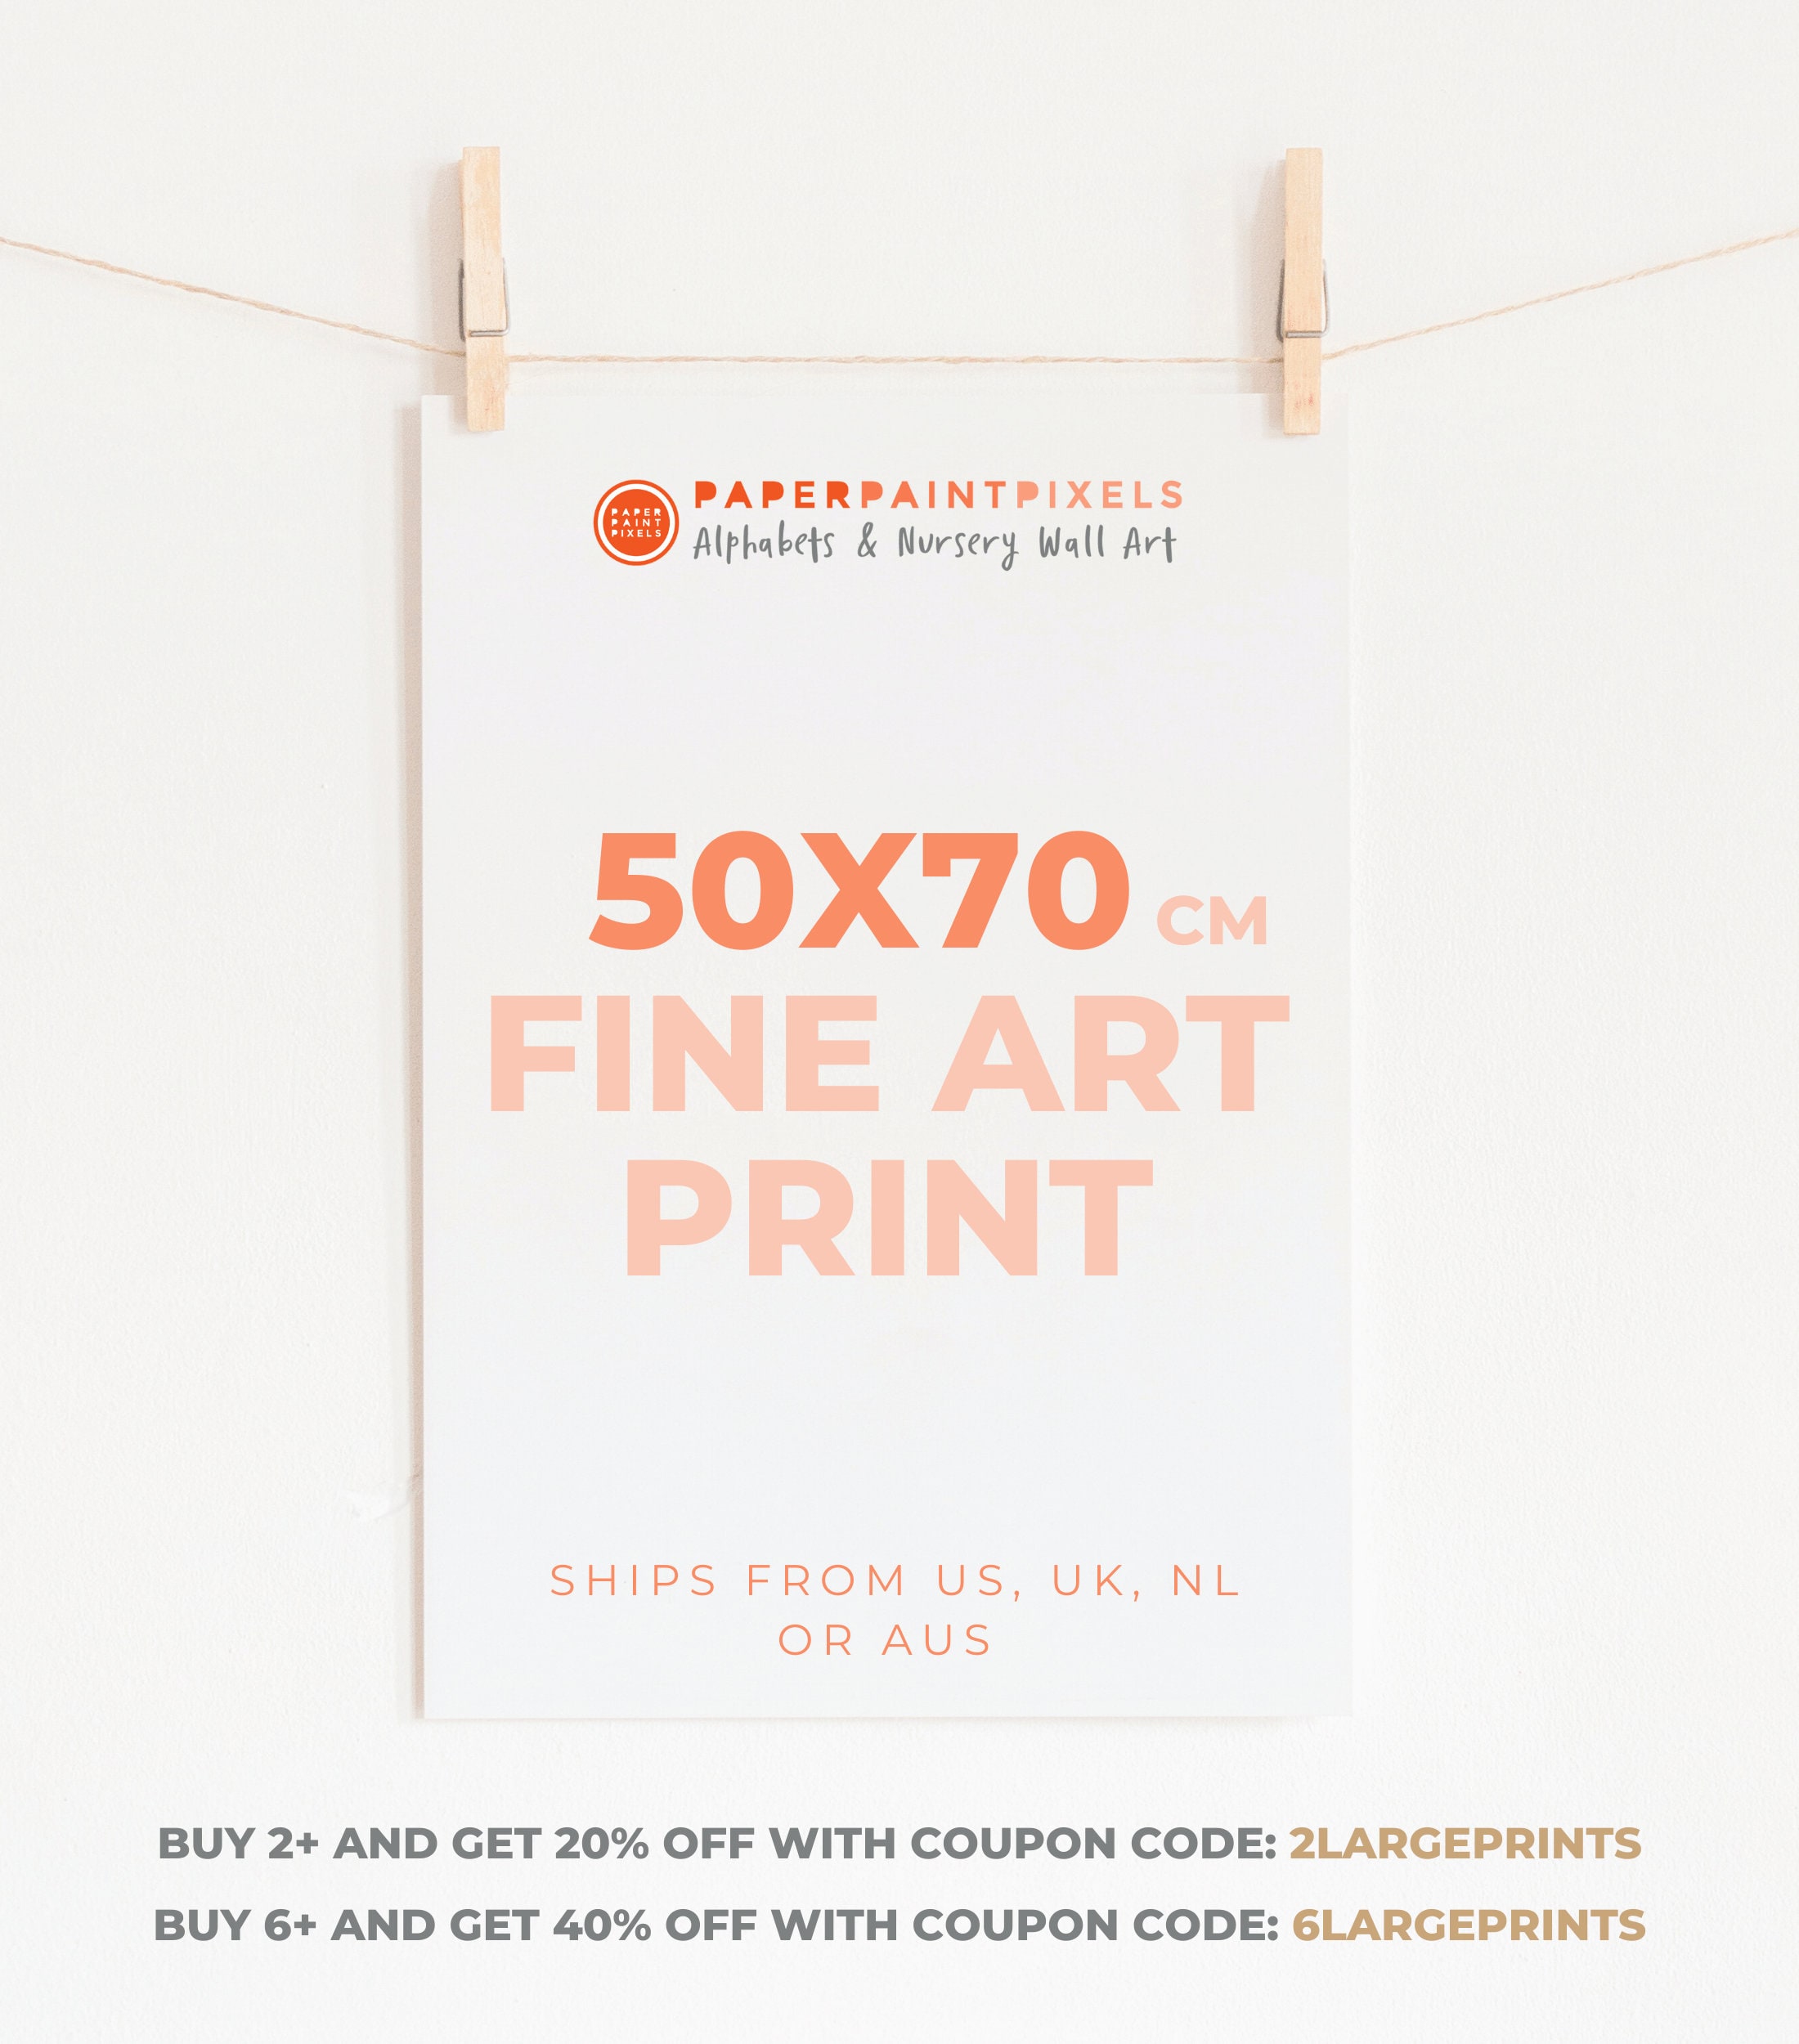 er mere end Politik End 50x70cm Art Print-get Your Paperpaintpixels Art Printed - Etsy